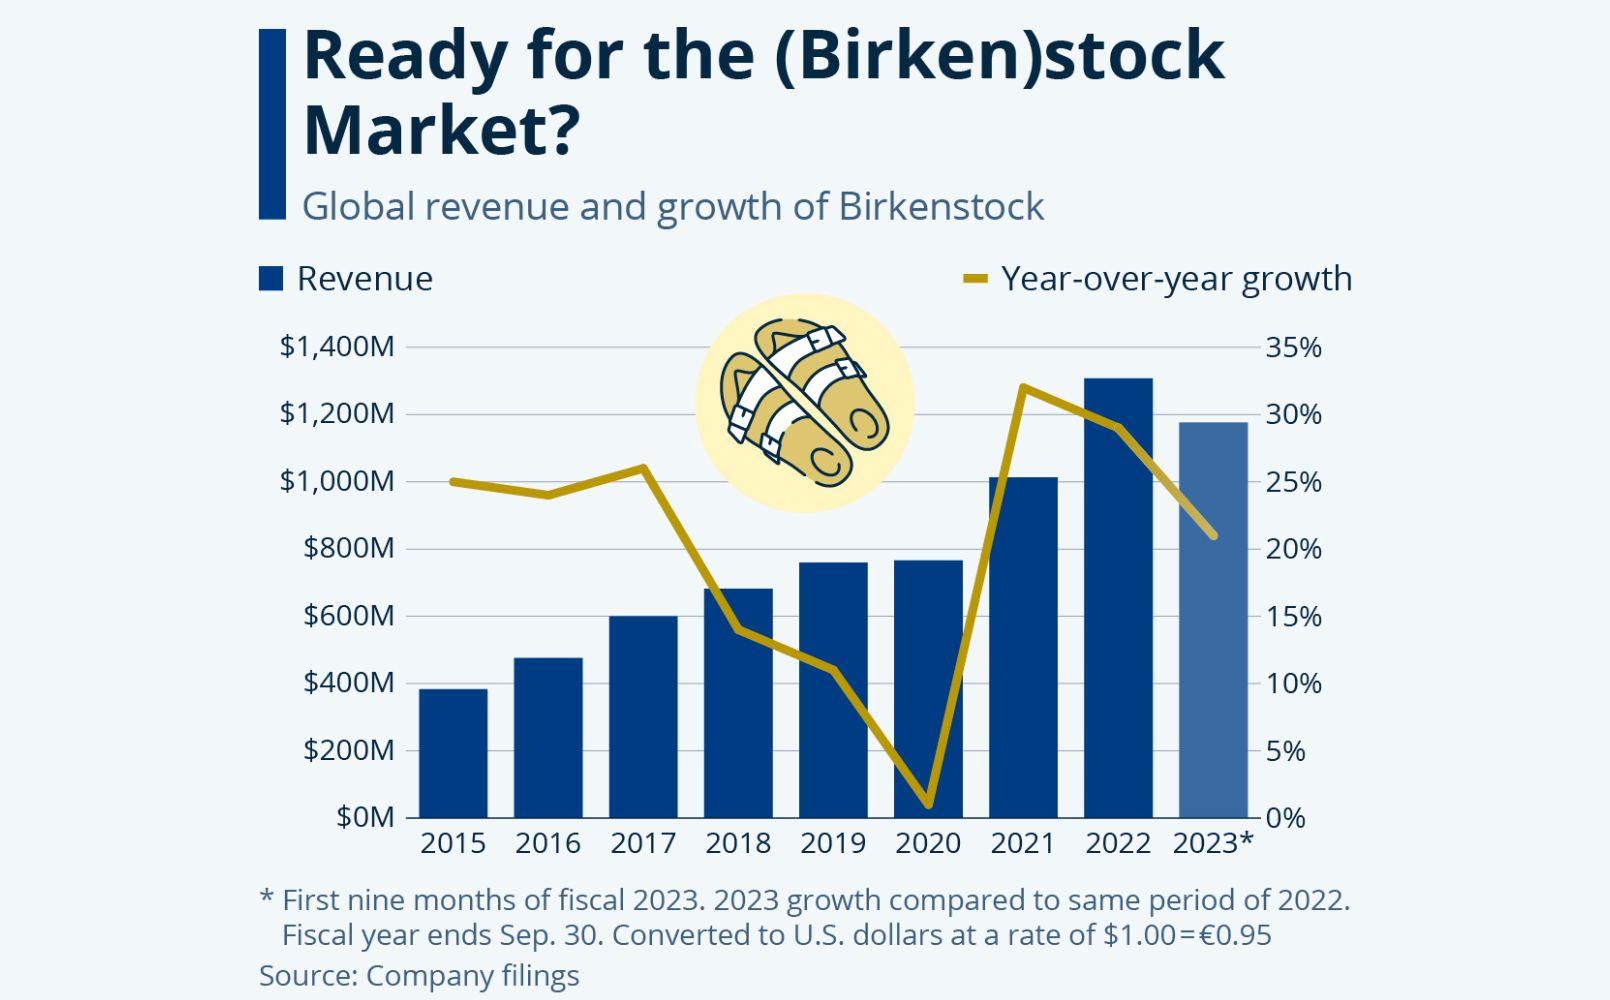 Birkenstock revenue